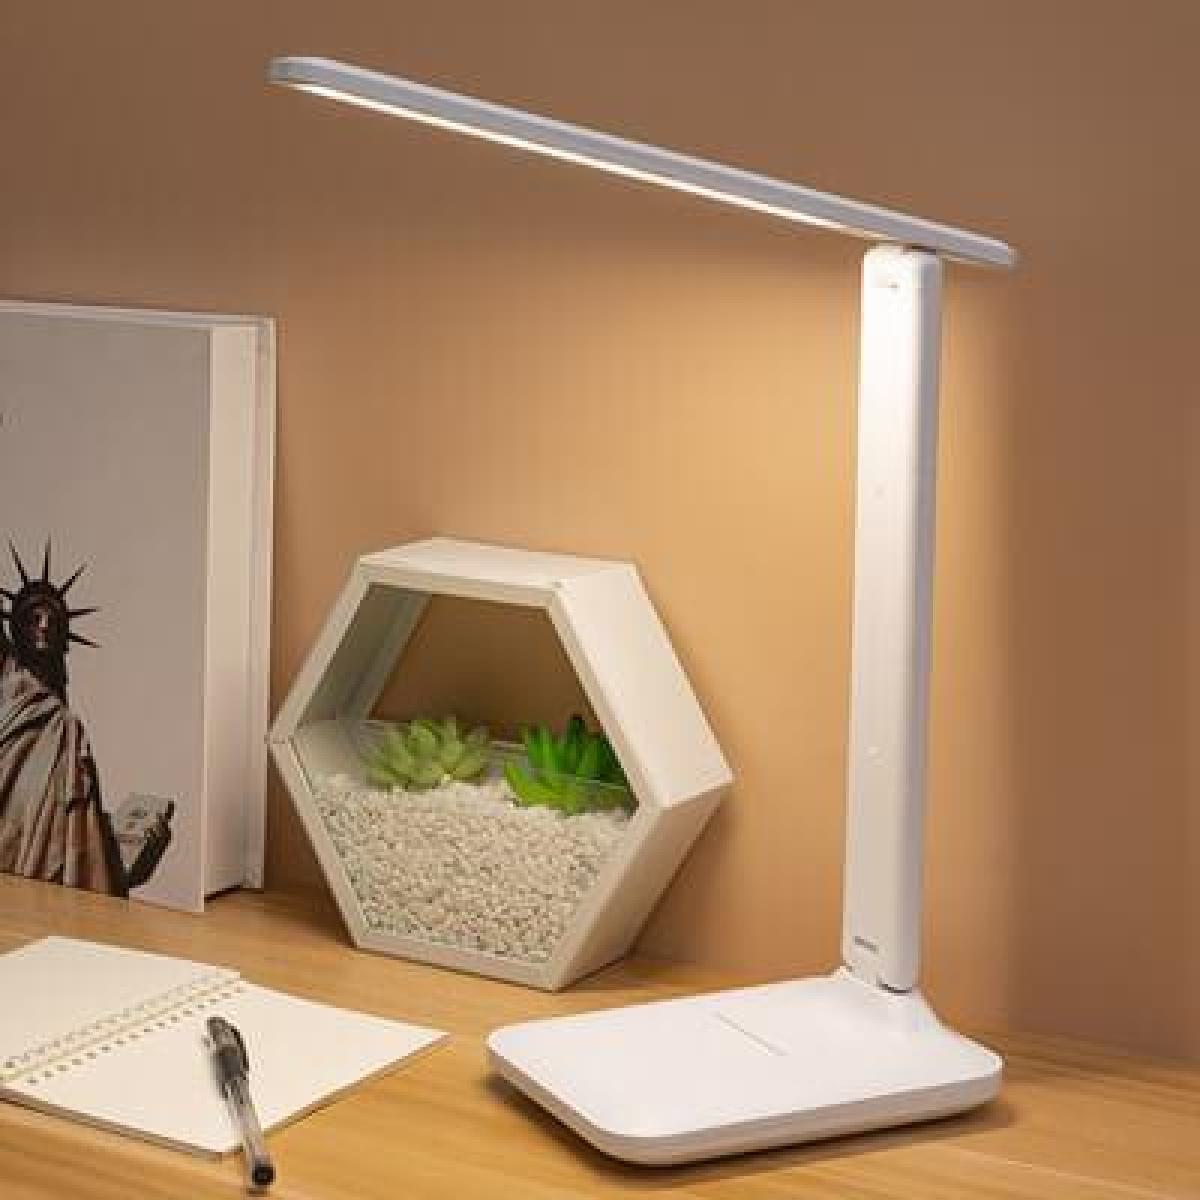 Φωτιστικό Γραφείου LED Θερμό / Ψυχρό / Dimmable Αναδιπλούμενο Με Βάση Κινητού σε Λευκό Χρώμα 12cm x 17cm x 29cm x33cm